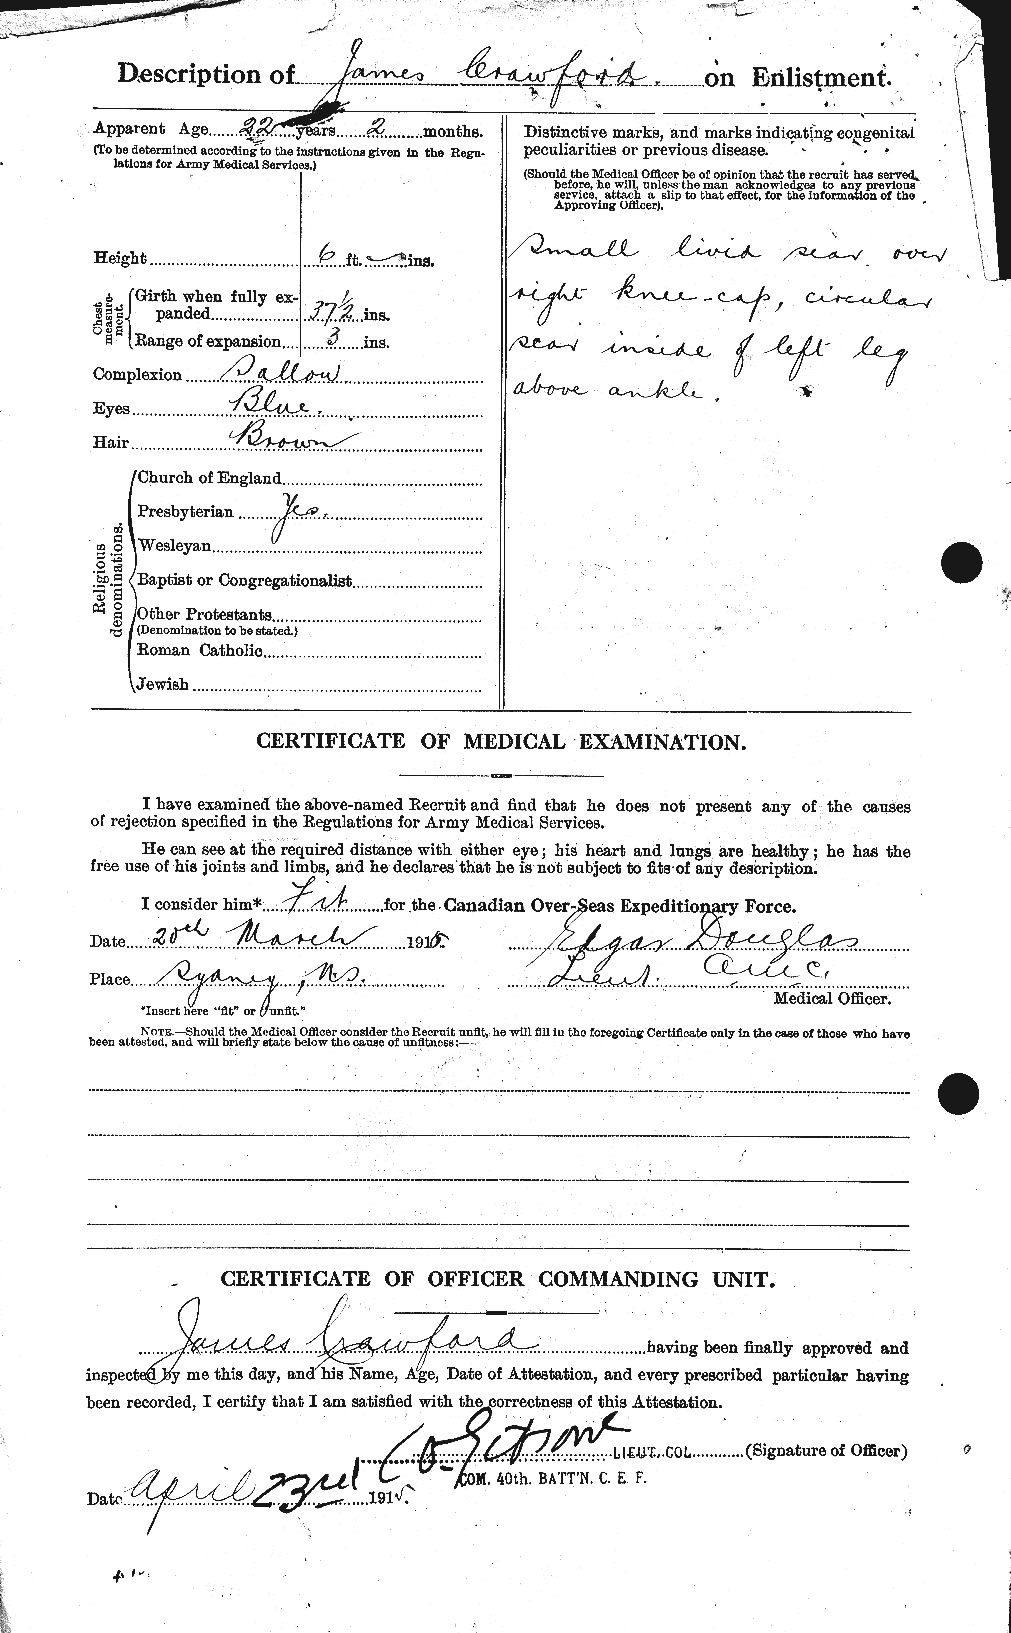 Dossiers du Personnel de la Première Guerre mondiale - CEC 062774b